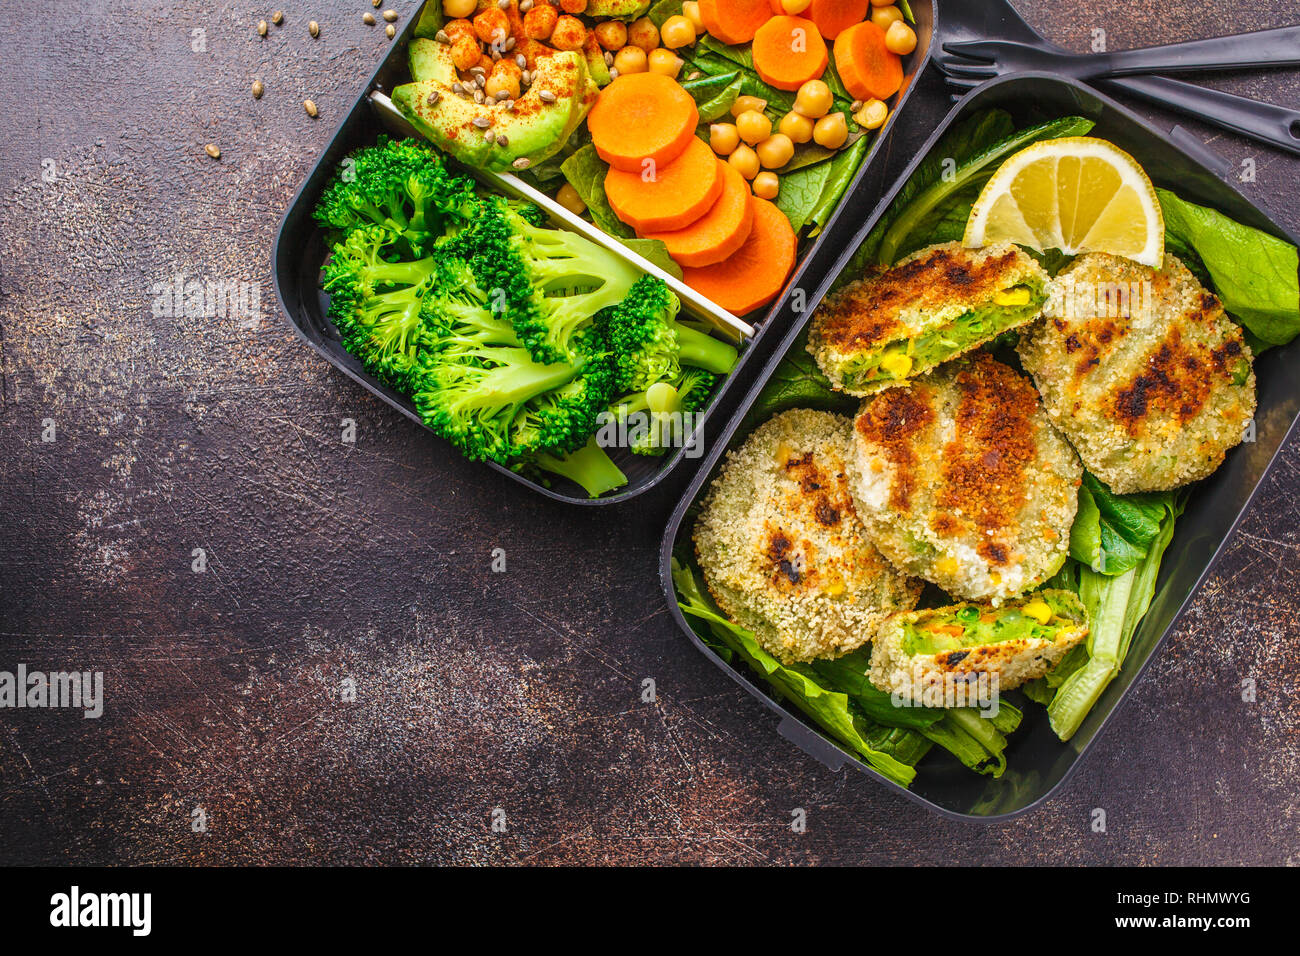 Préparation des repas sains avec des contenants green burgers, le brocoli, les pois chiches et salade verte sur fond sombre. Banque D'Images